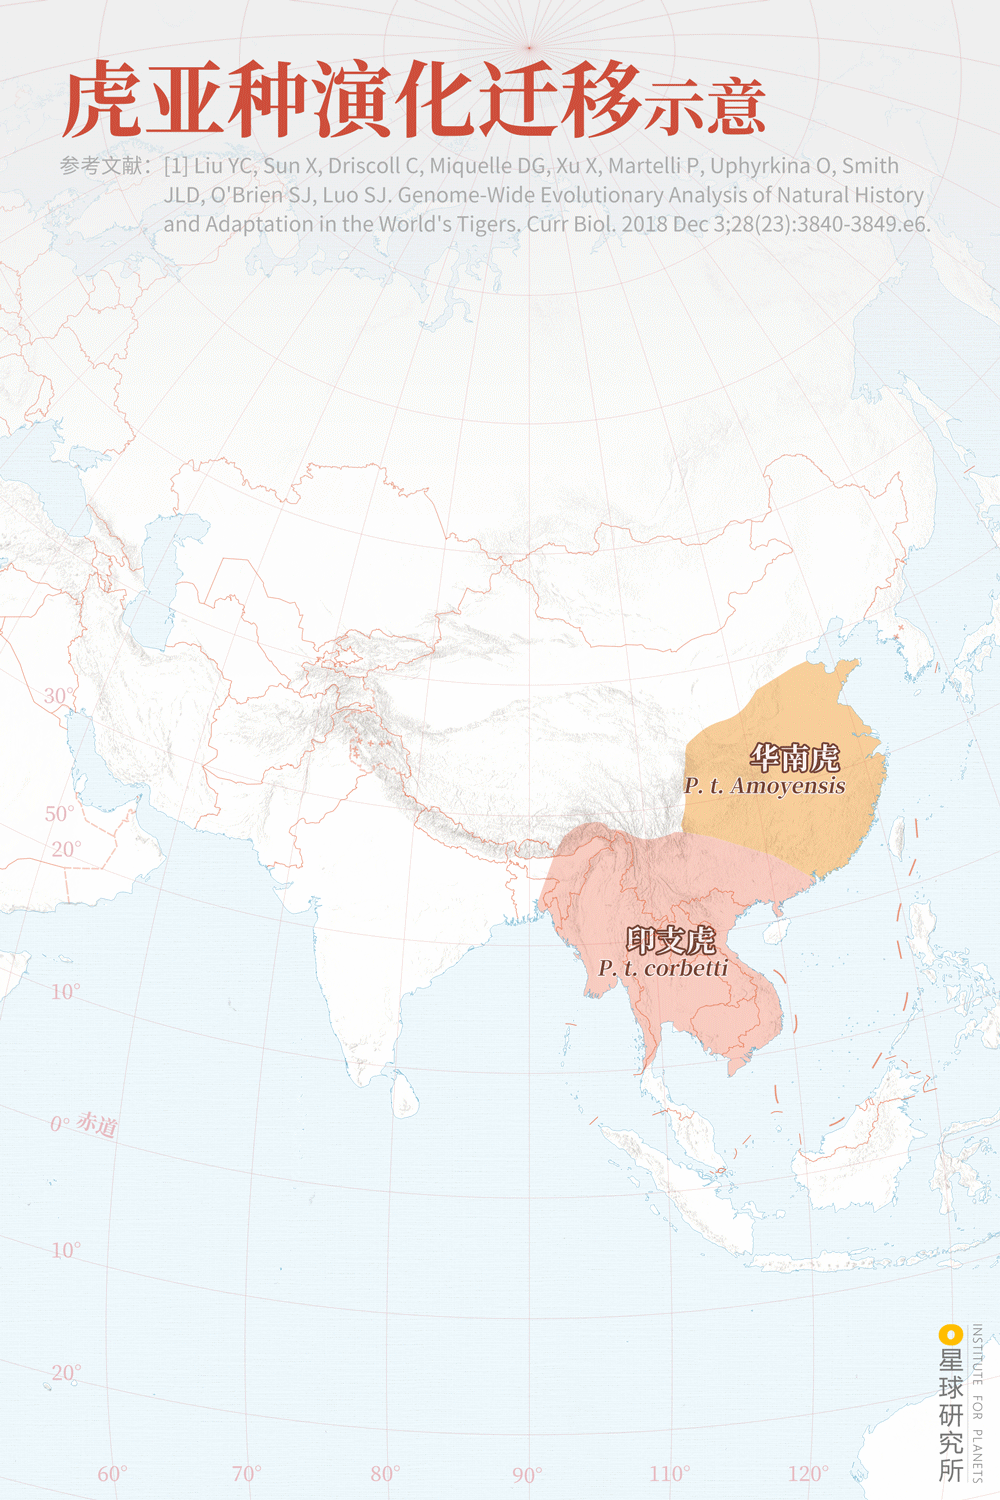 华南虎分布地区图片